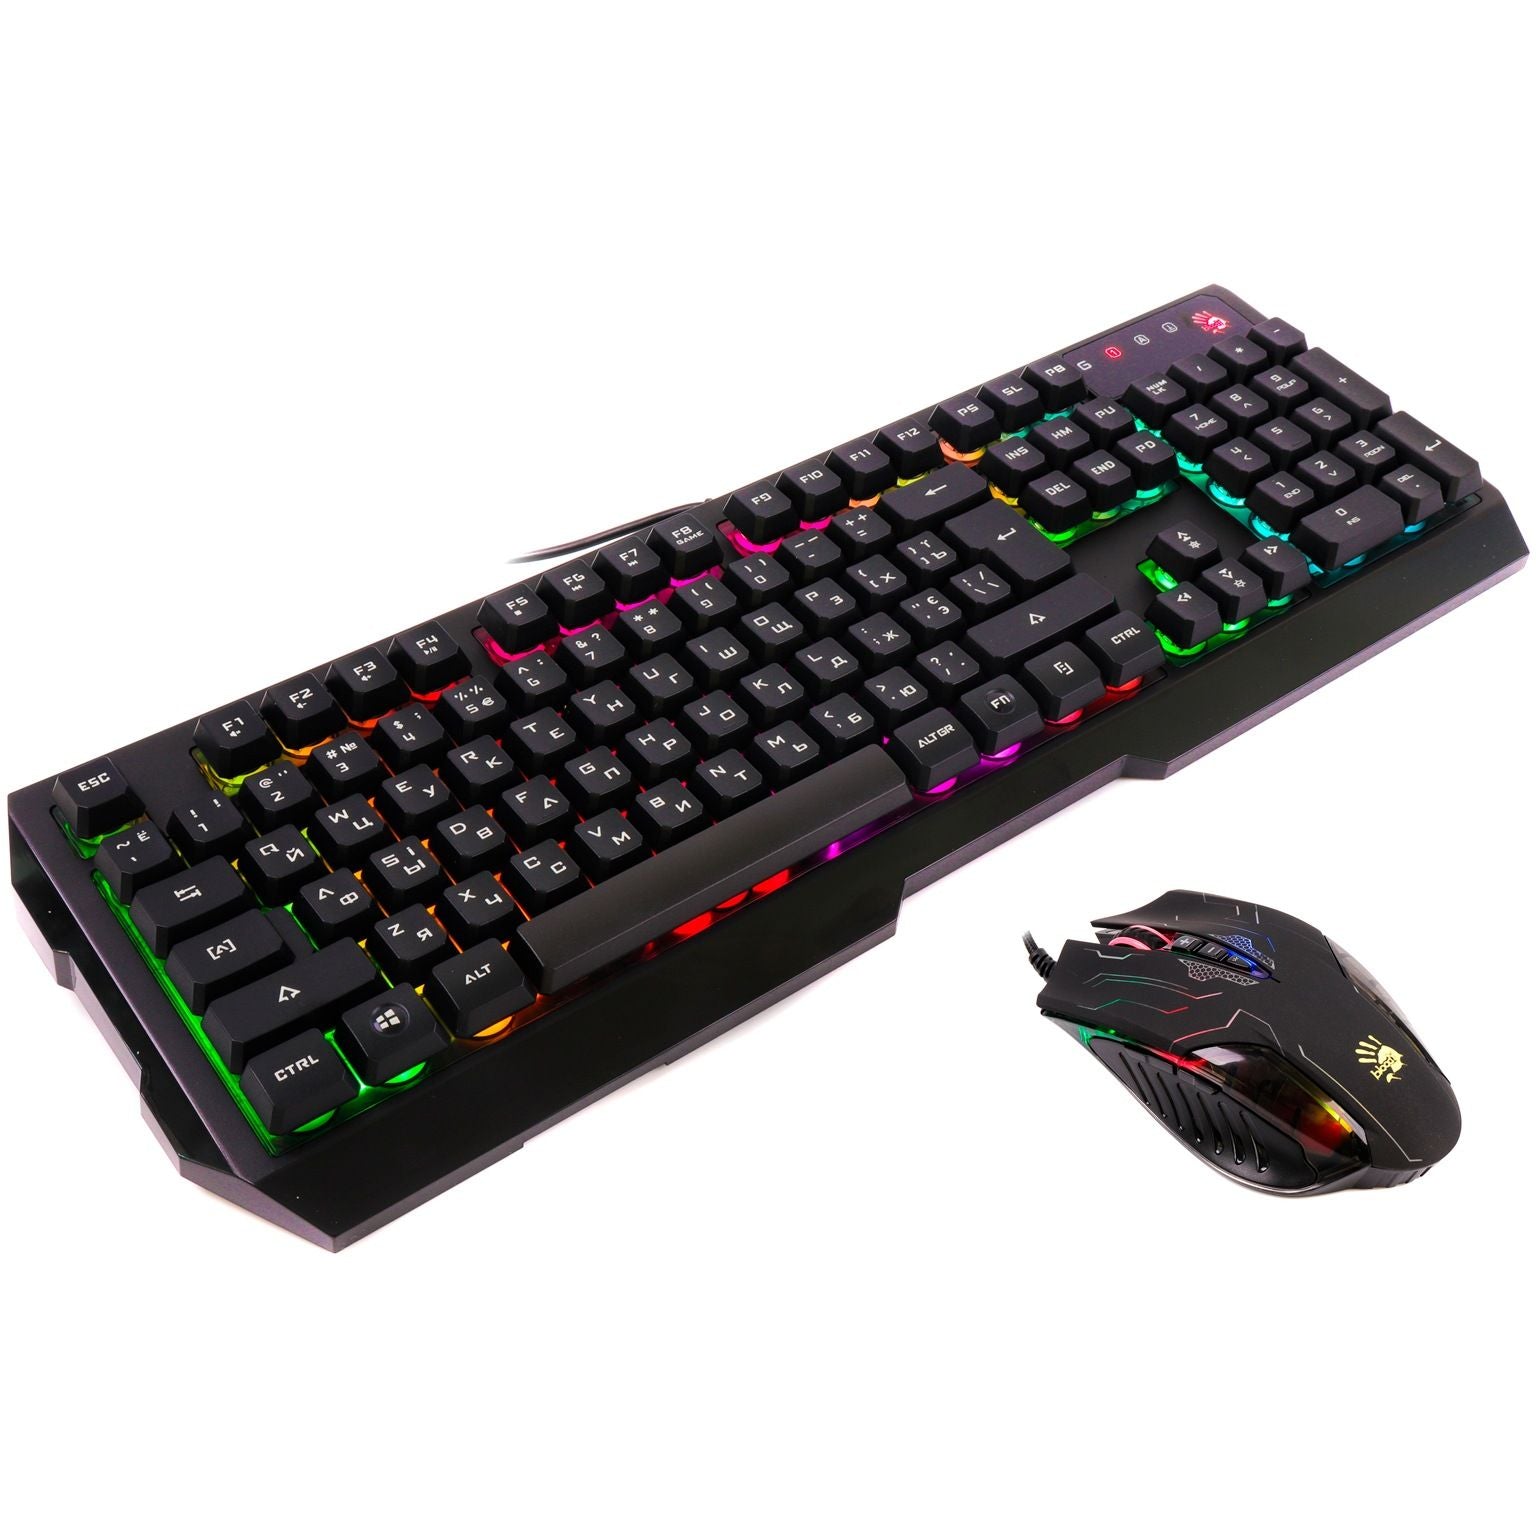 Bloody Q1300 Gaming Mouse & Keyboard Set